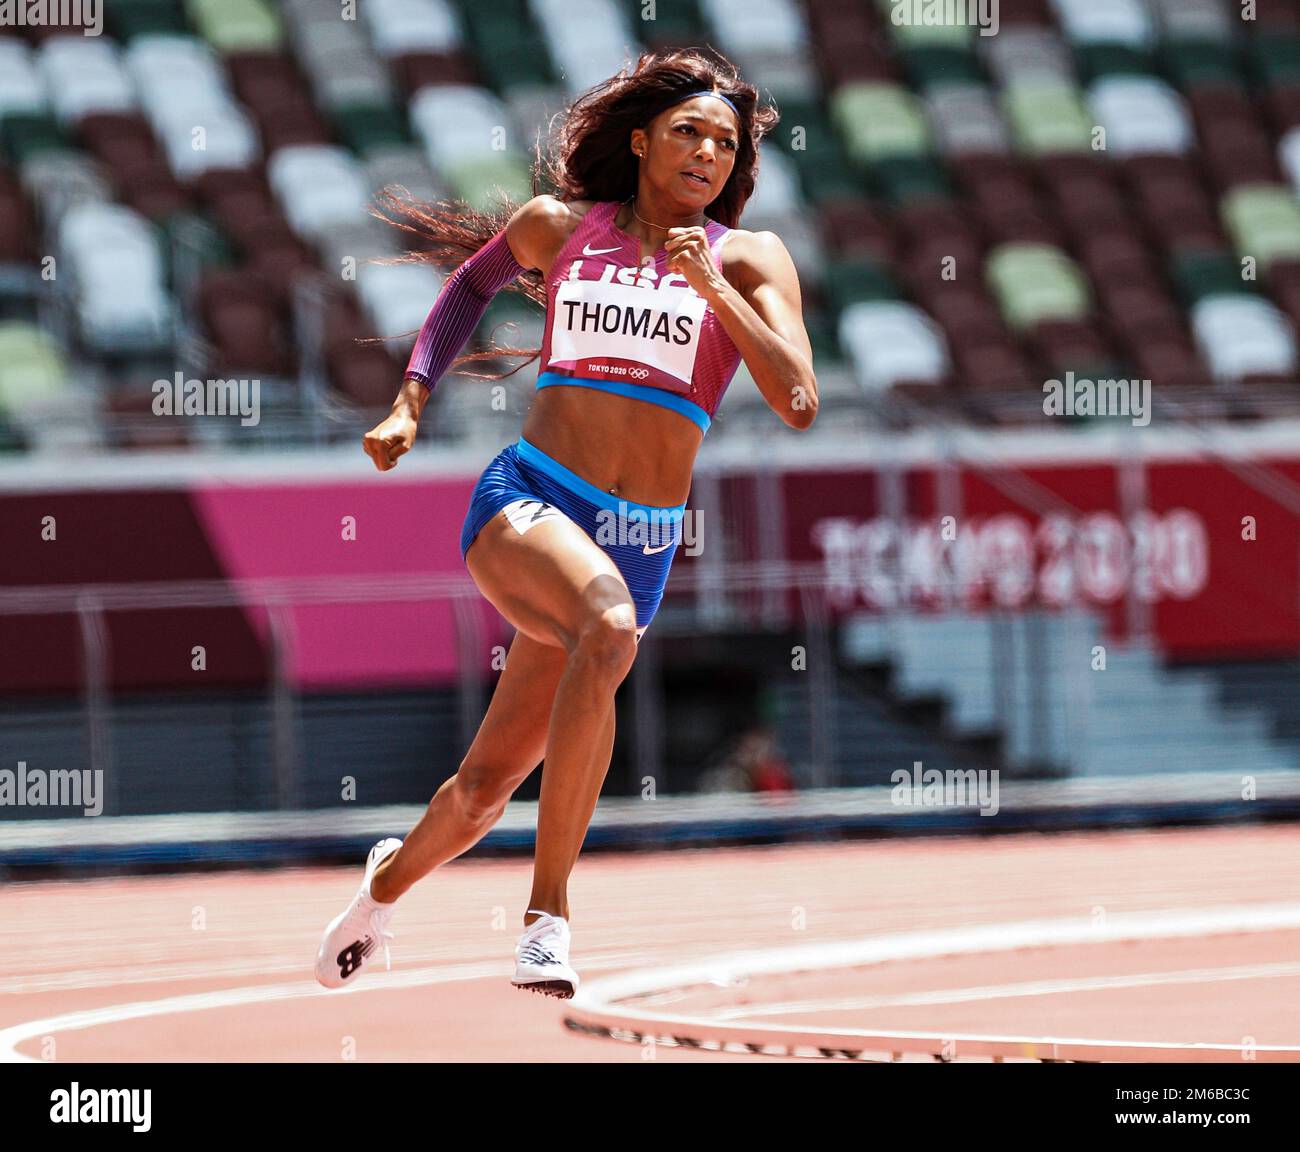 Gabrielle Thomas (USA) gareggiando nei 200 metri femminili ai Giochi Olimpici estivi 2020 (2021) di Tokyo, Giappone Foto Stock